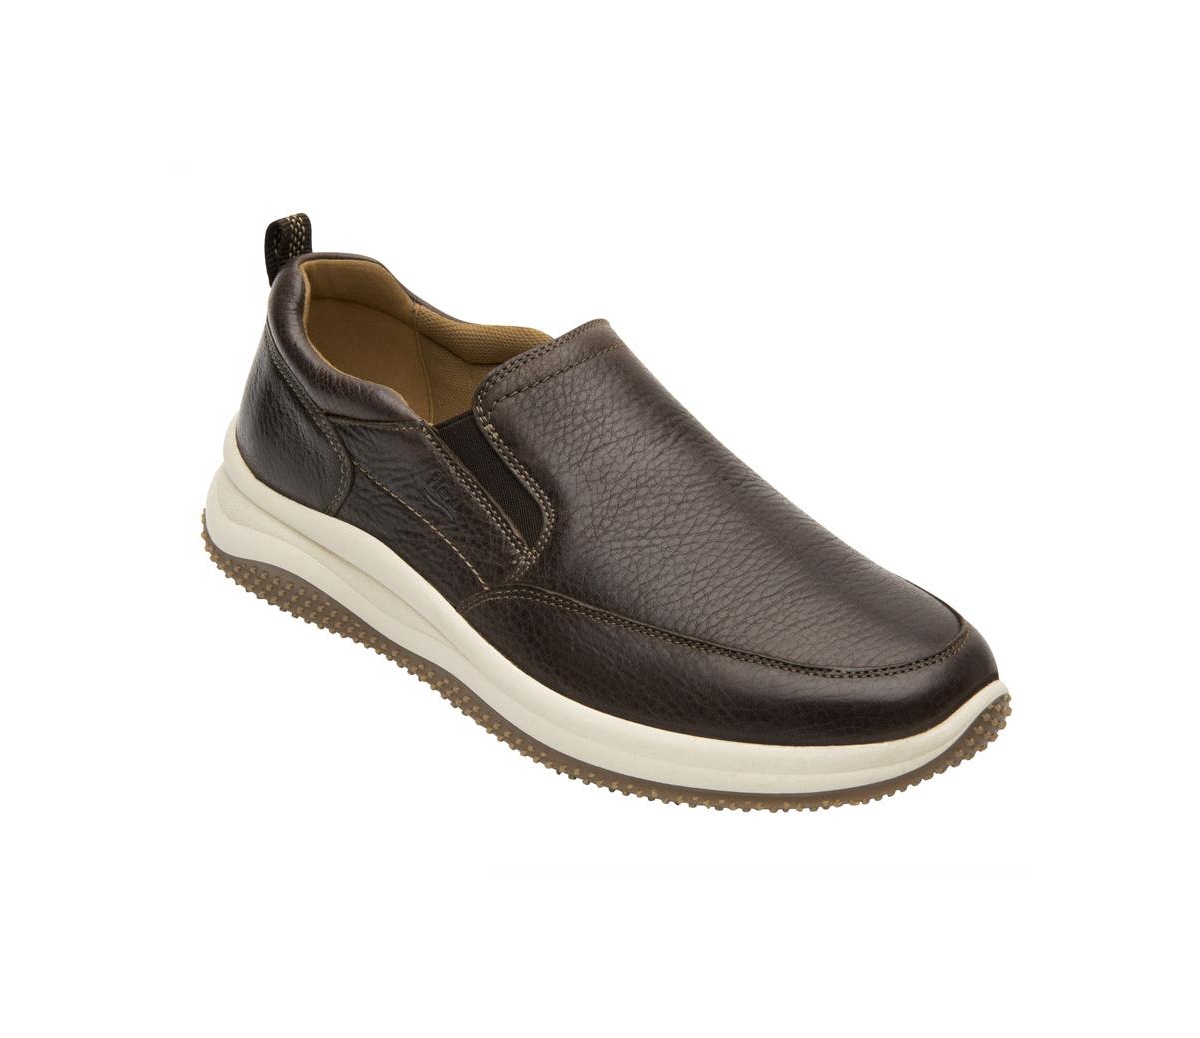 Men's Leather Slip-on Sneakers By Flexi - Dark brown